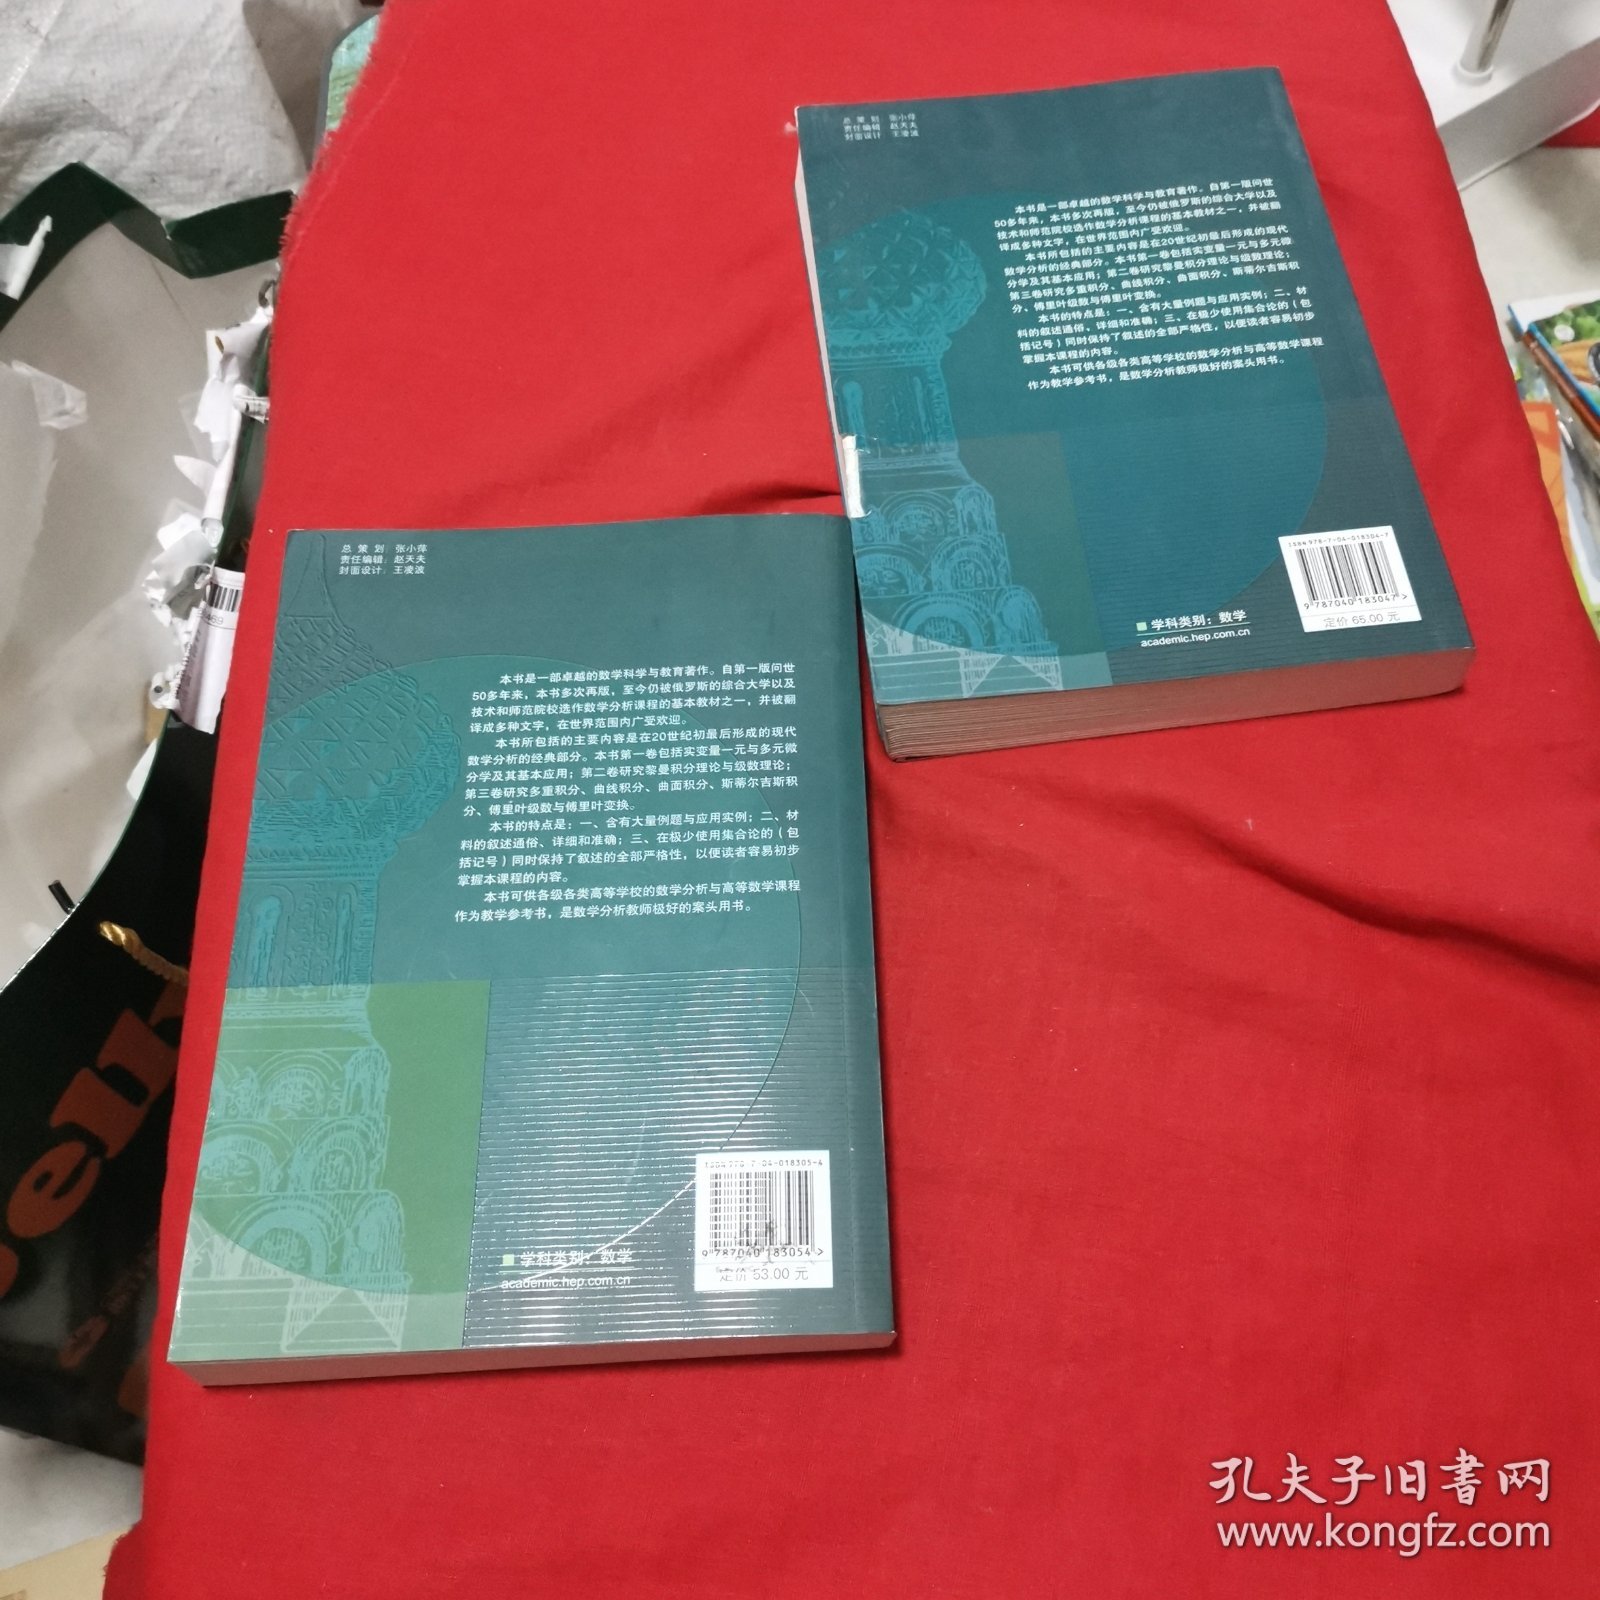 微积分学教程（第2、3卷）（第二、三卷）第8版（两本合售）